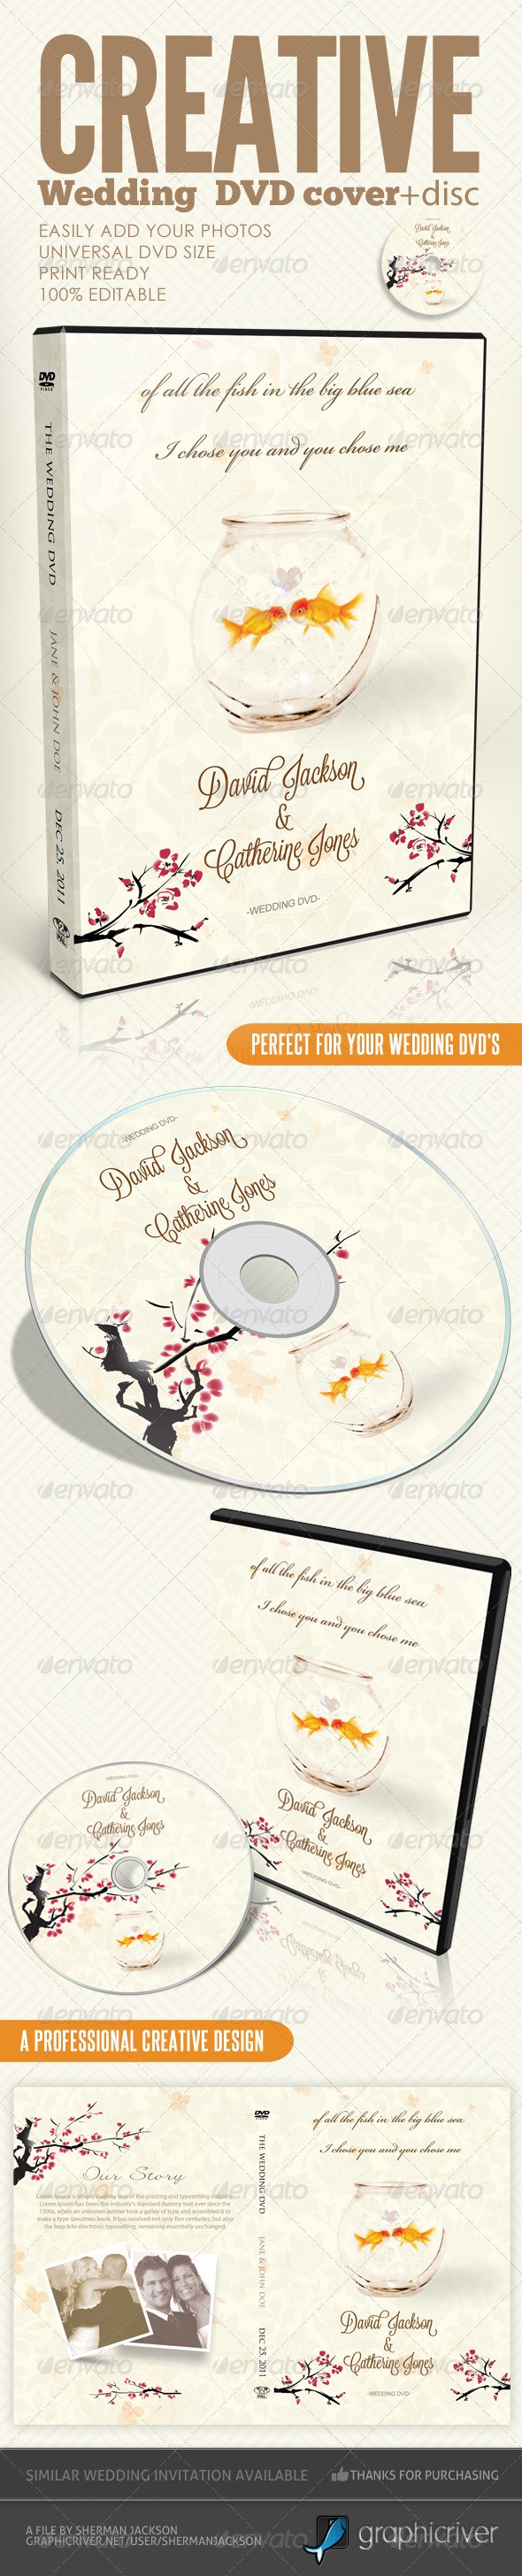 اثر هنری فتوشاپ / برچسب دیسک ؛ دی وی دی خلاقانه عروسی